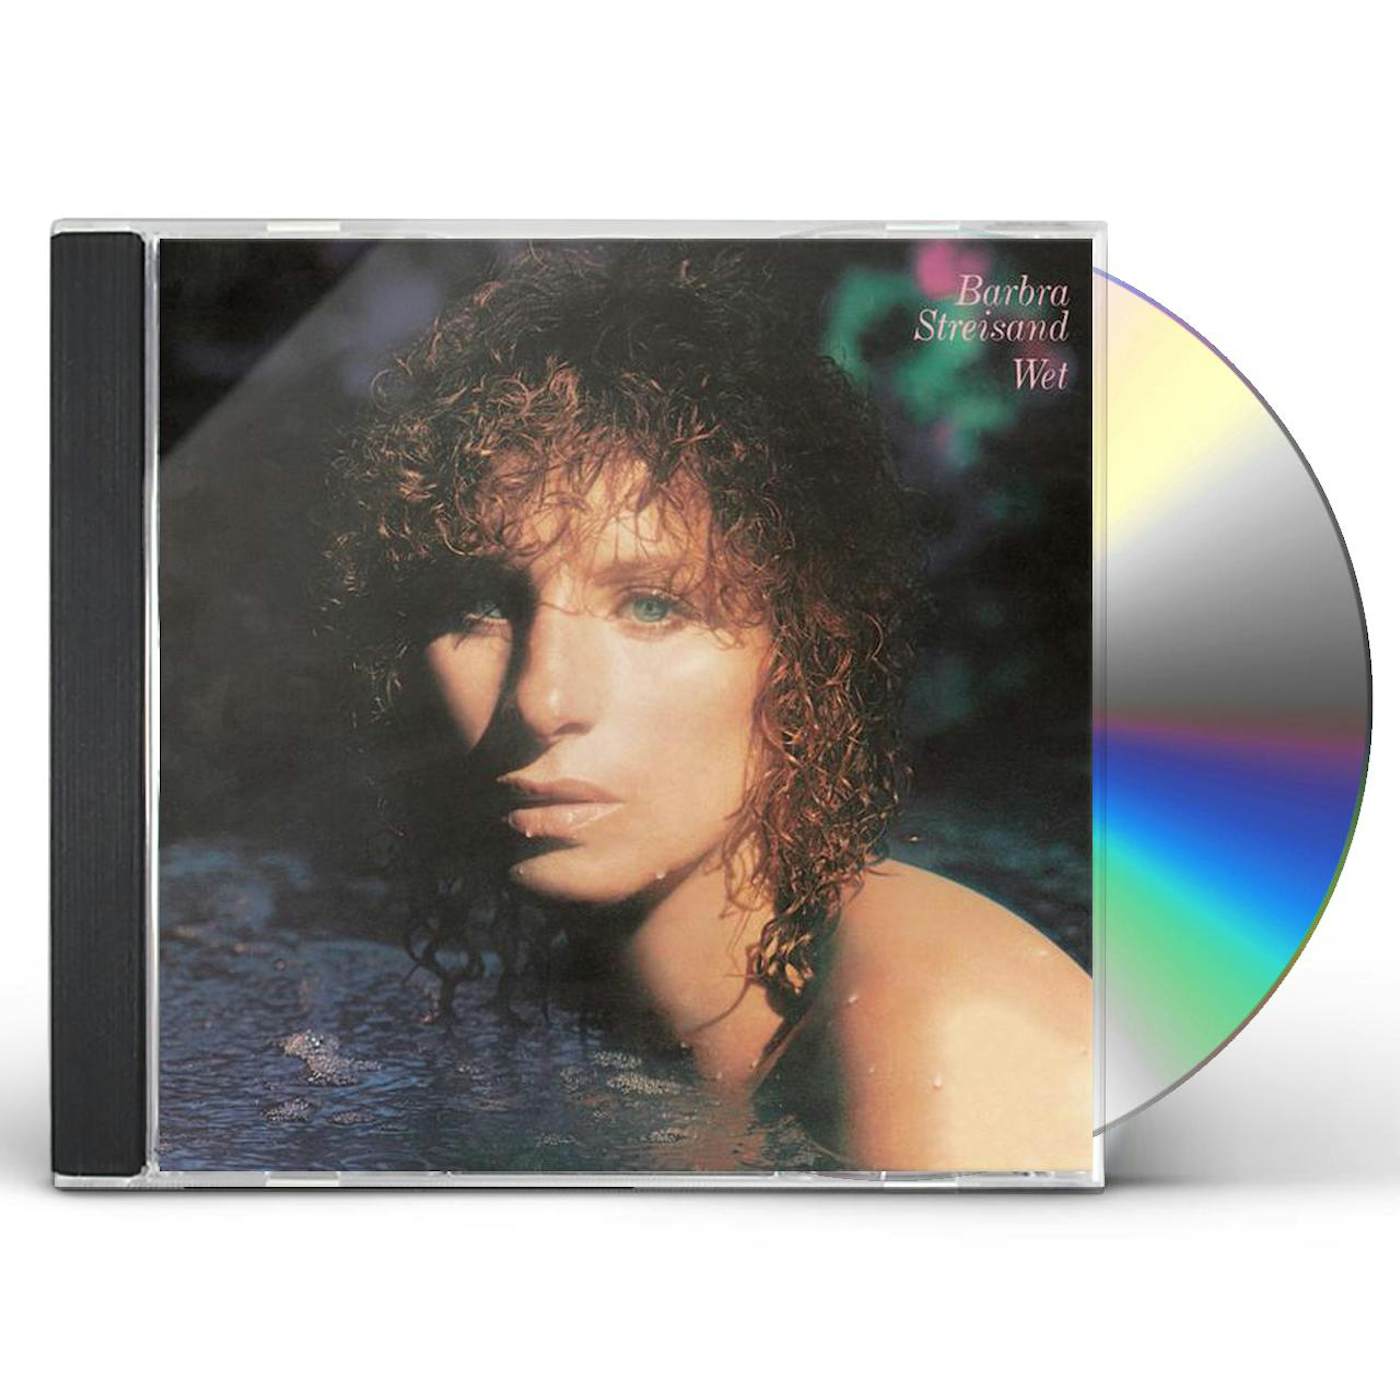 Barbra Streisand WET CD